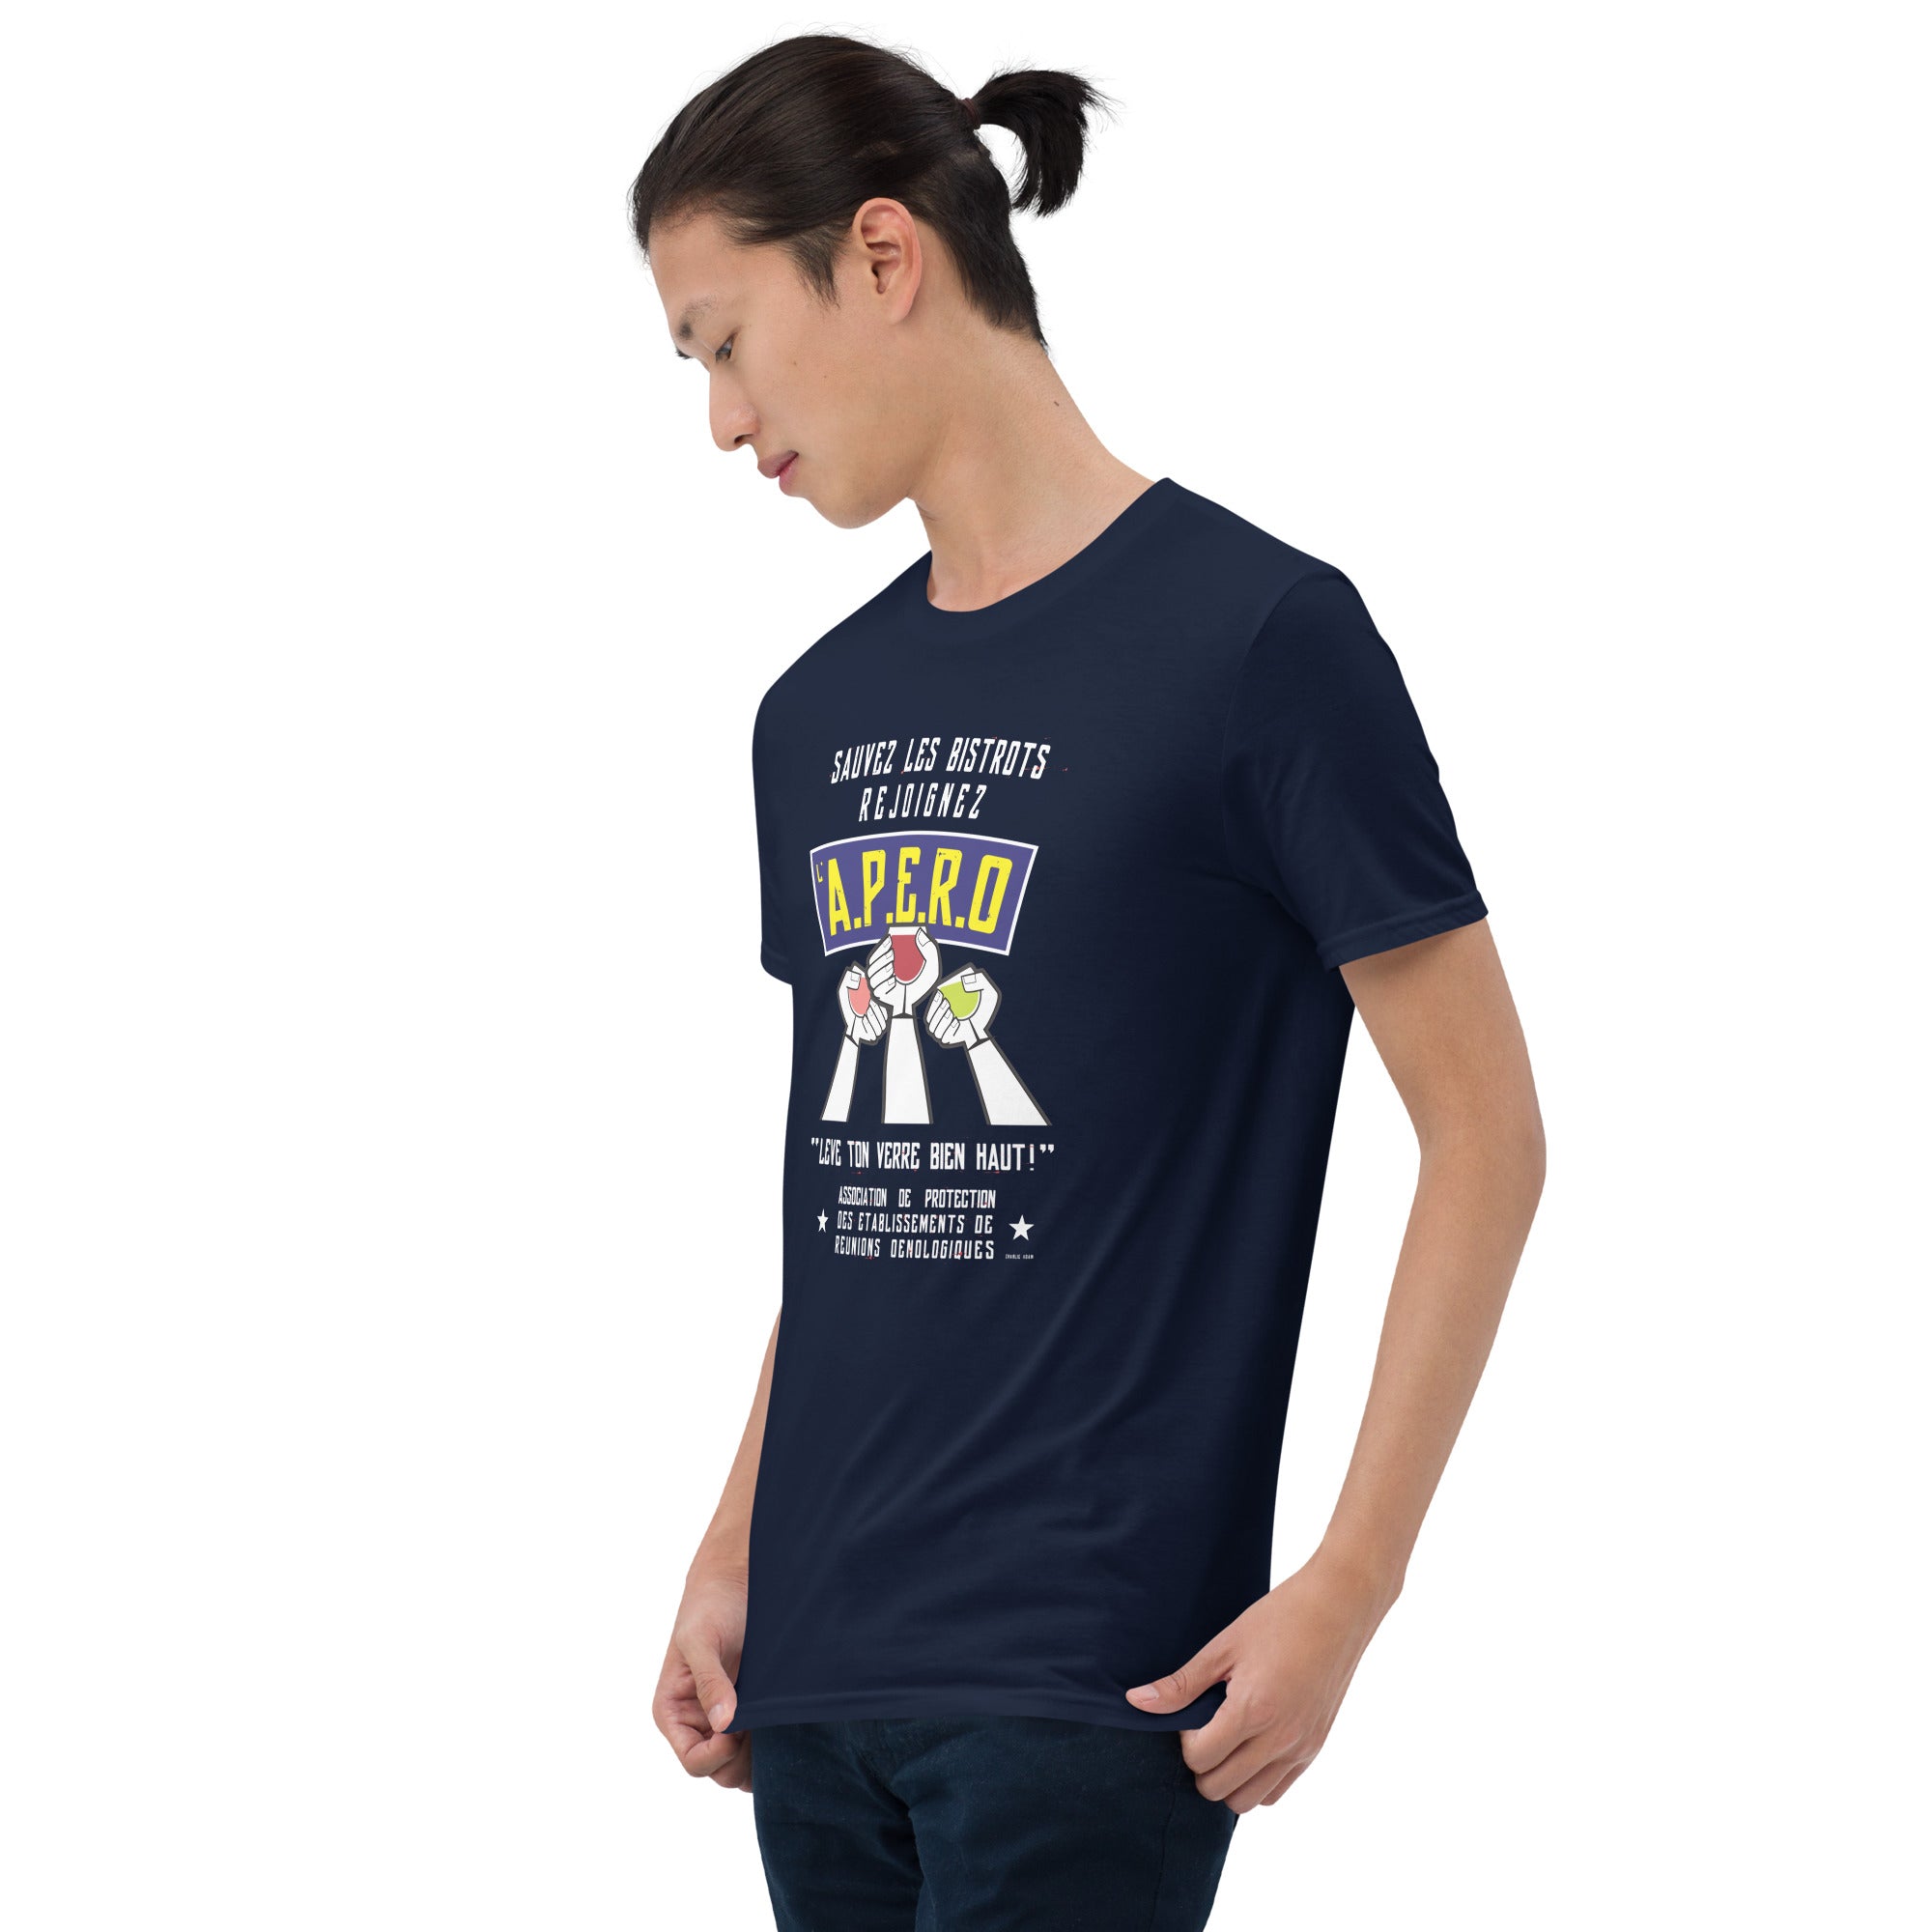 T-shirt softstyle en coton Sauvez les Bistrots, rejoignez l'Apéro